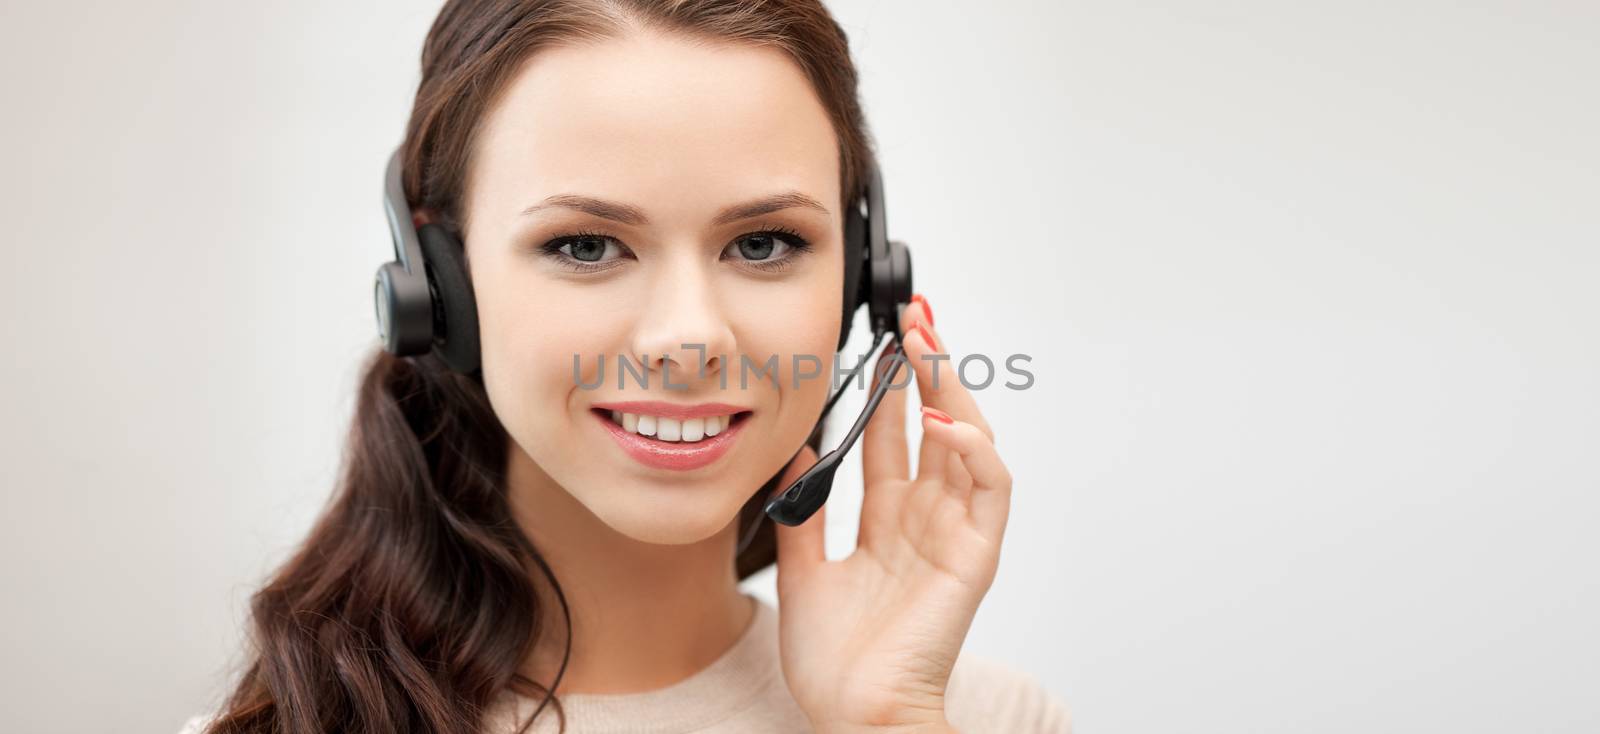 friendly female helpline operator with headphones by dolgachov